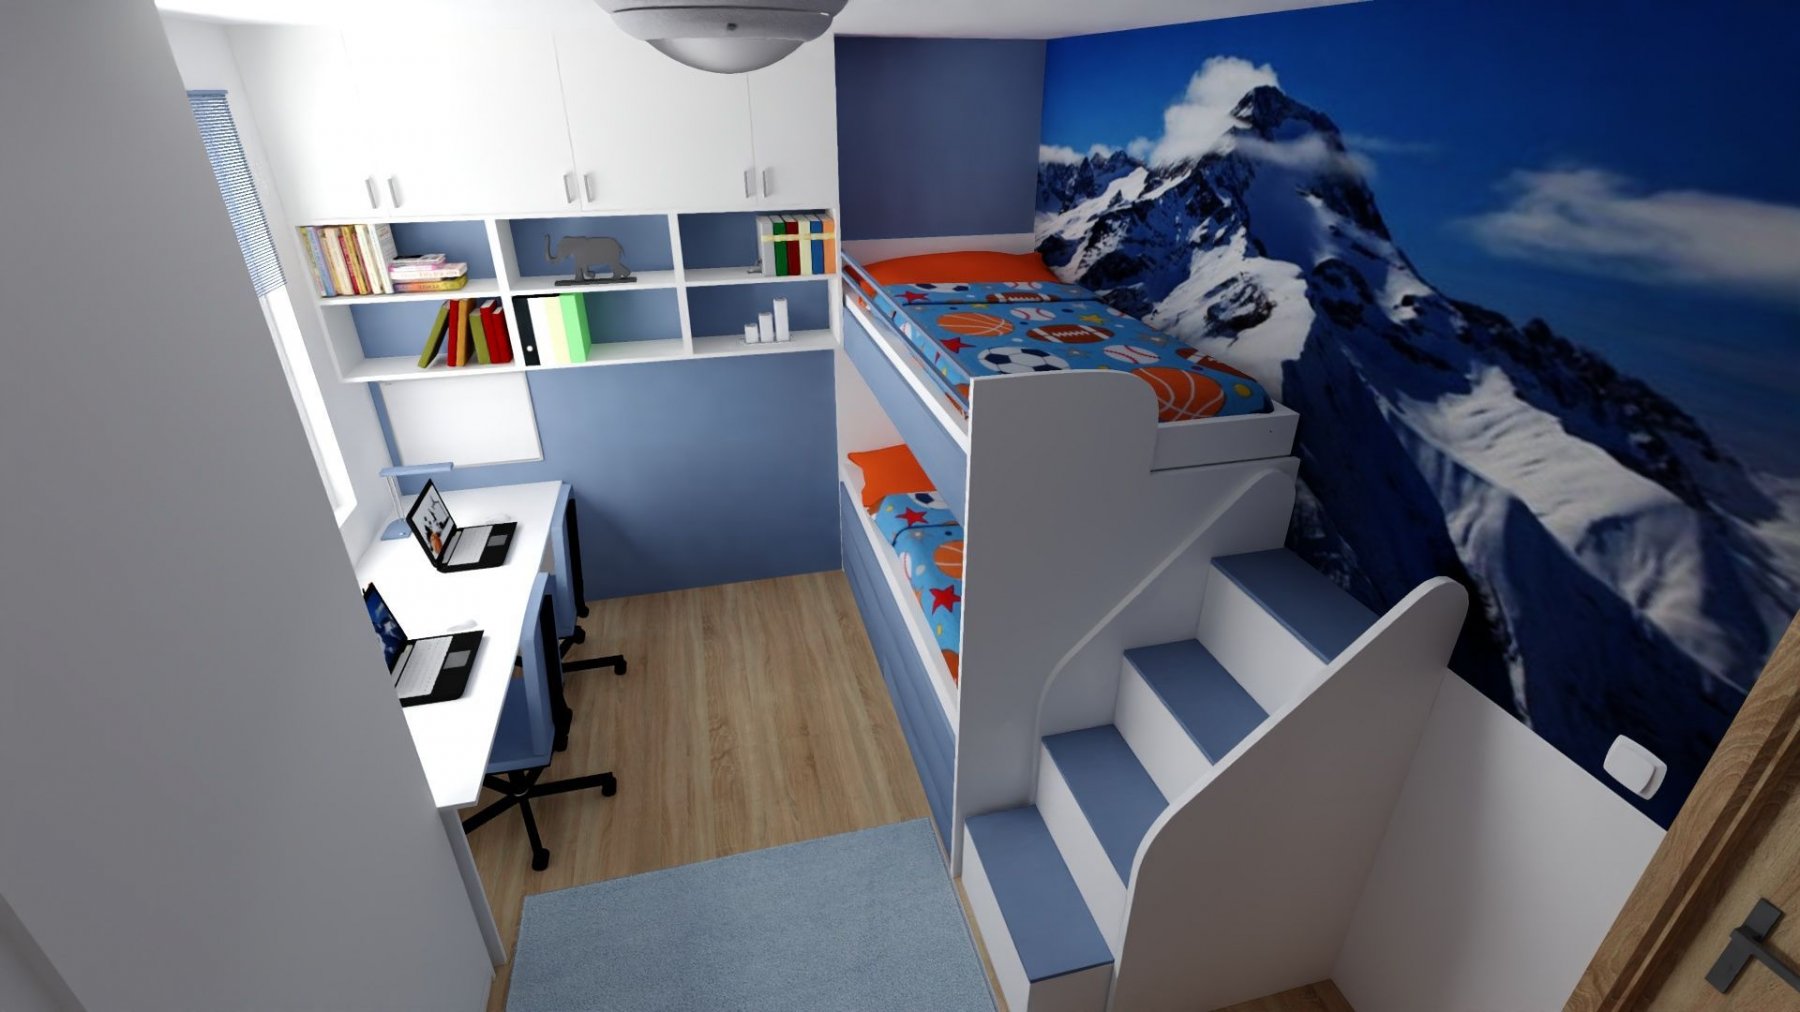 _5_detsky_pkoj_hory_basket_patrova_postel.jpg - Interiérový design & 3D vizualizace